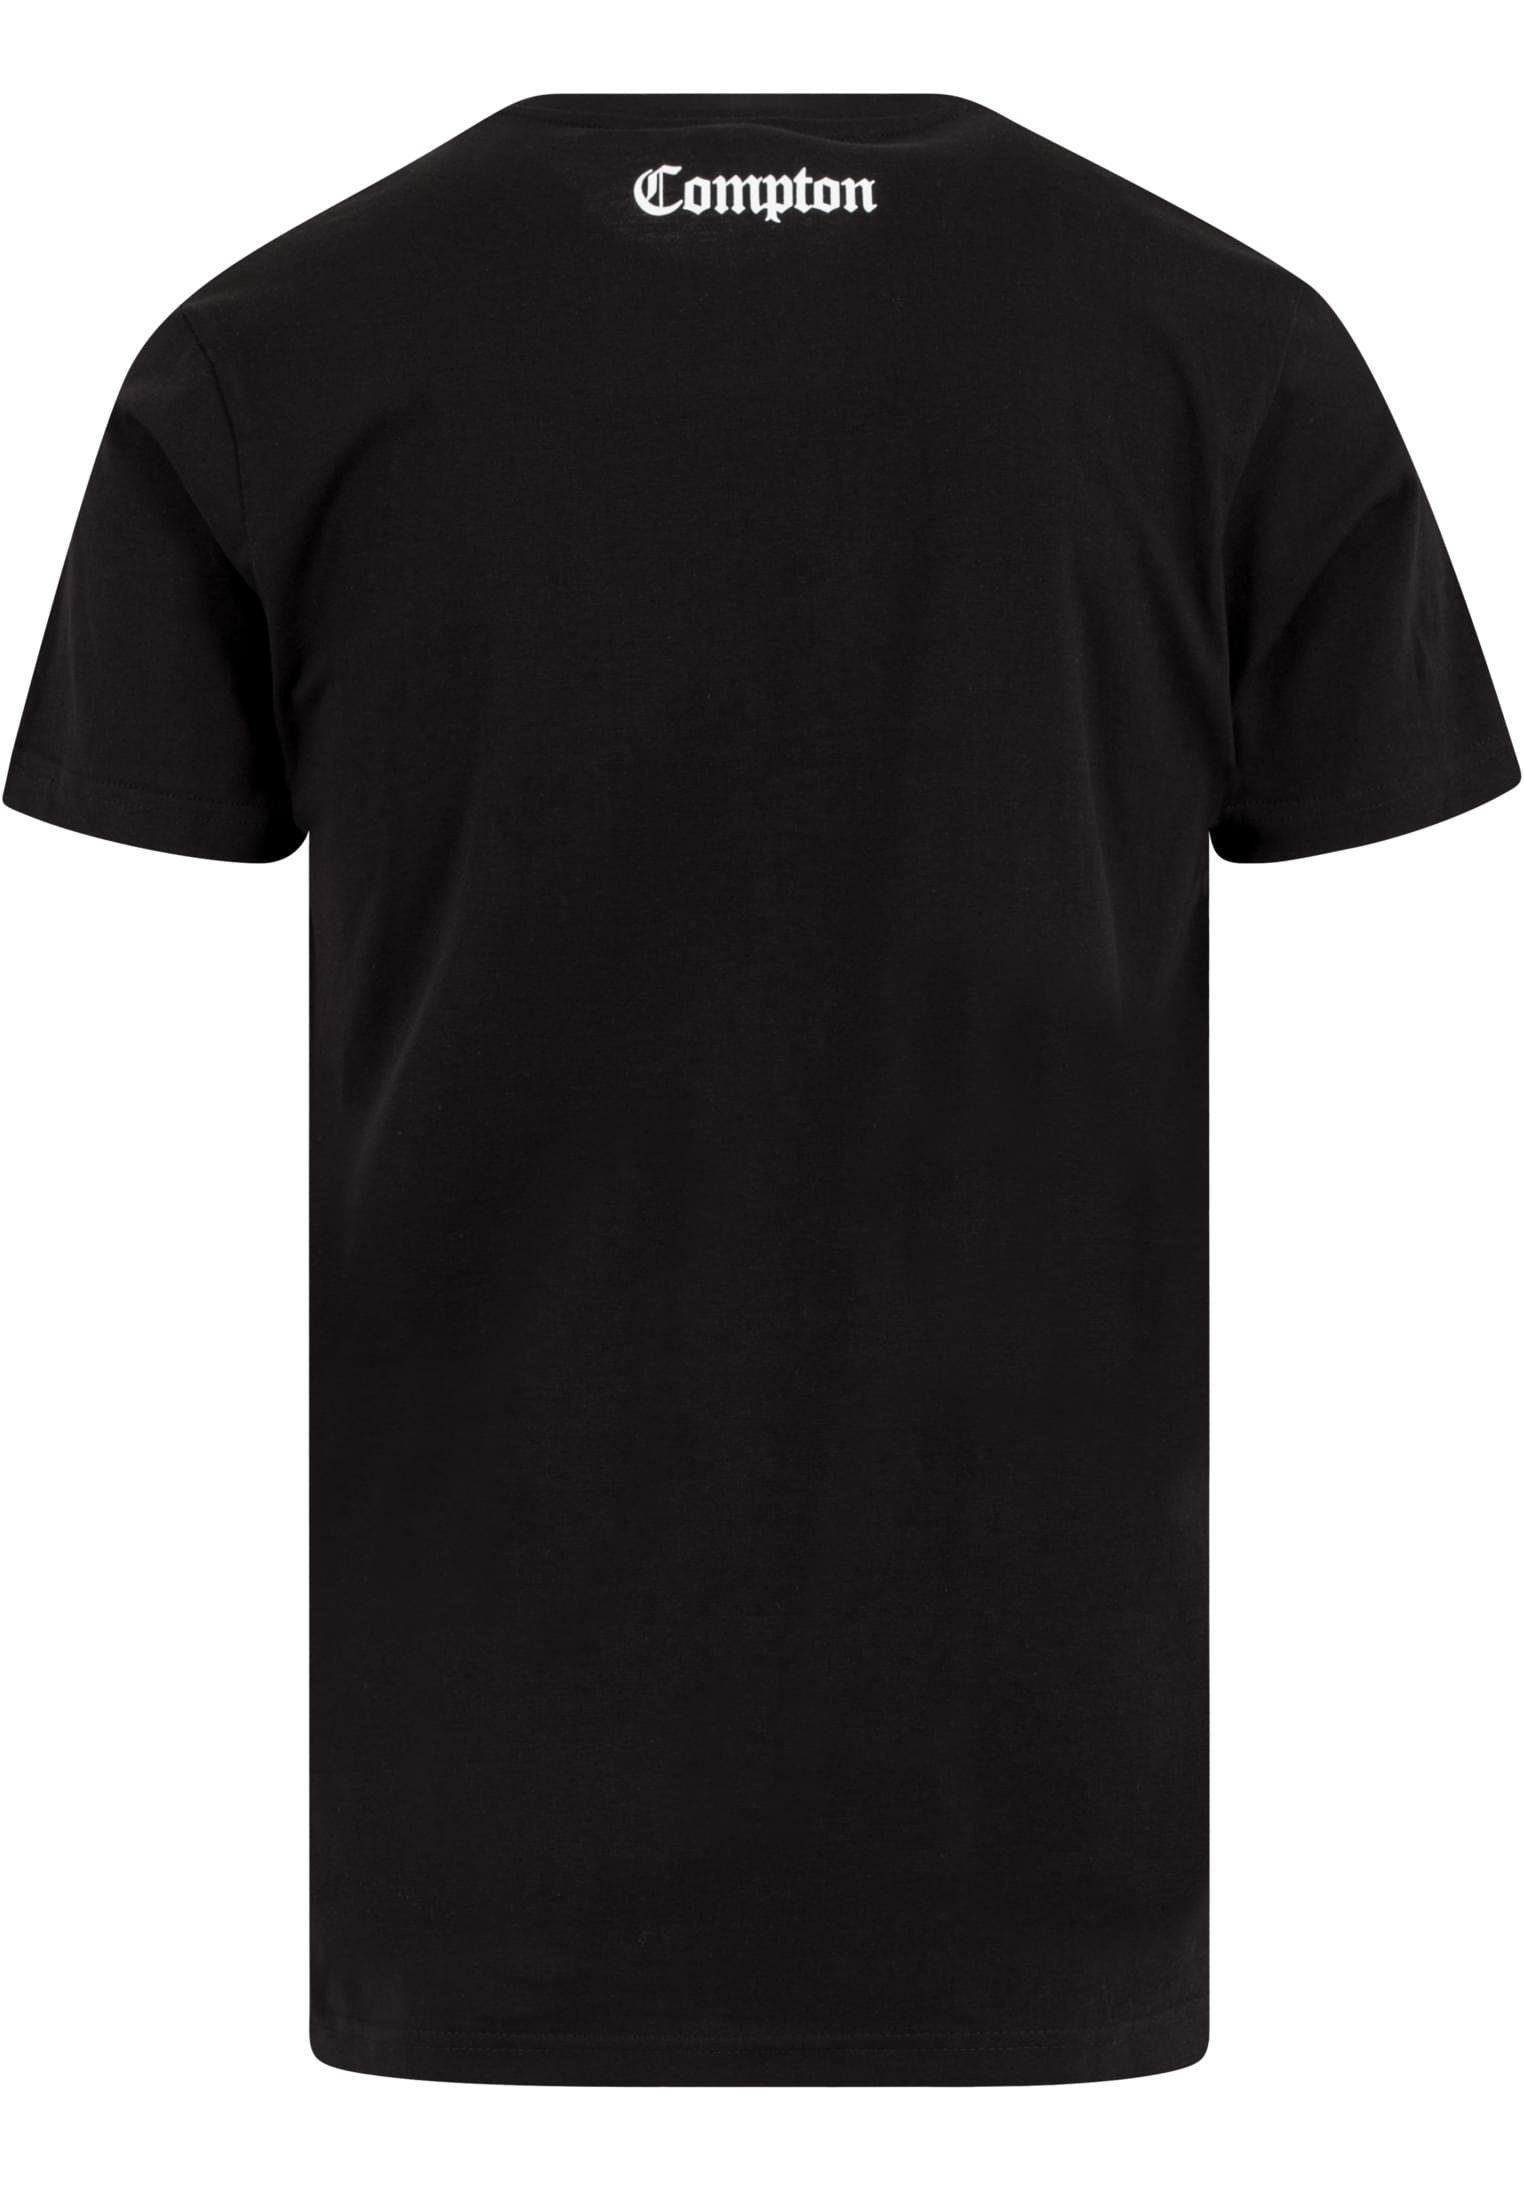 MisterTee T-Shirt Herren black Compton (1-tlg) Tee